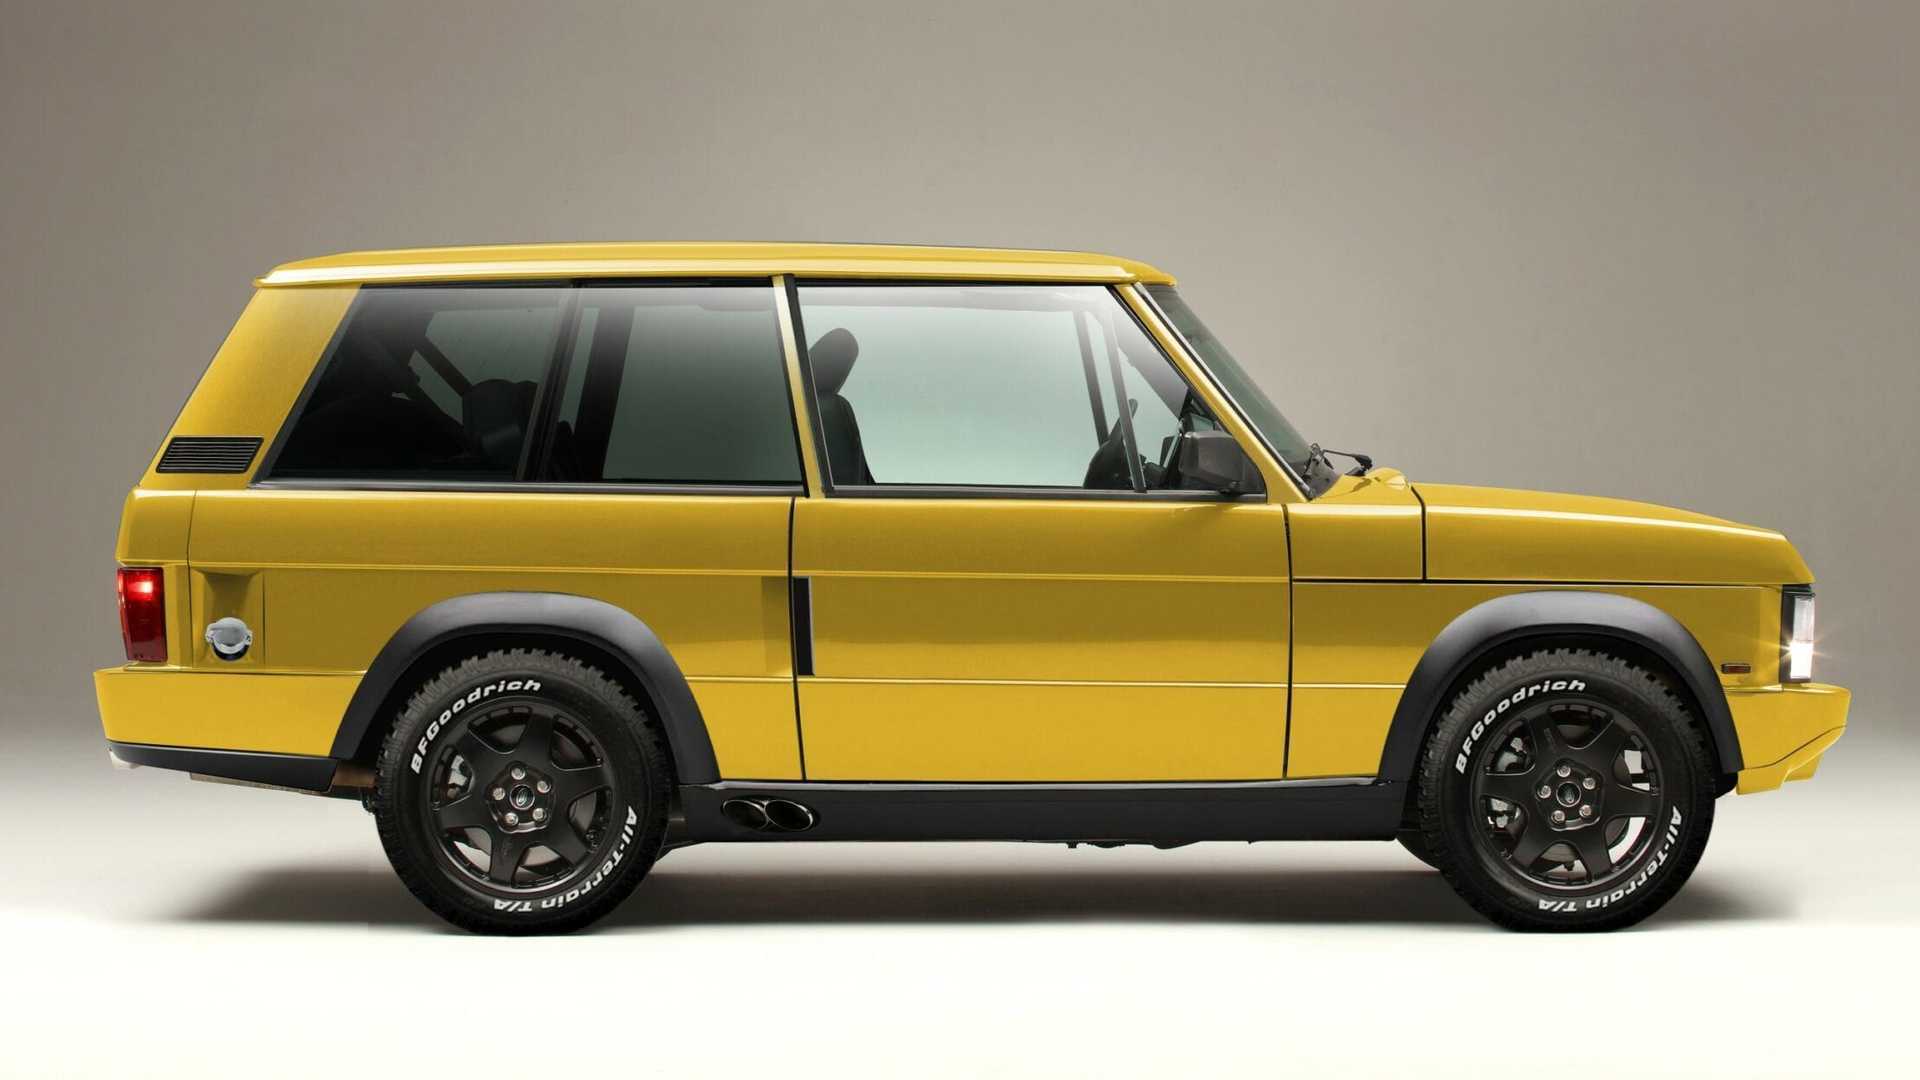 Chieftain Xtreme представляє собою глибоку модернізацію легендарного позашляховика Range Rover